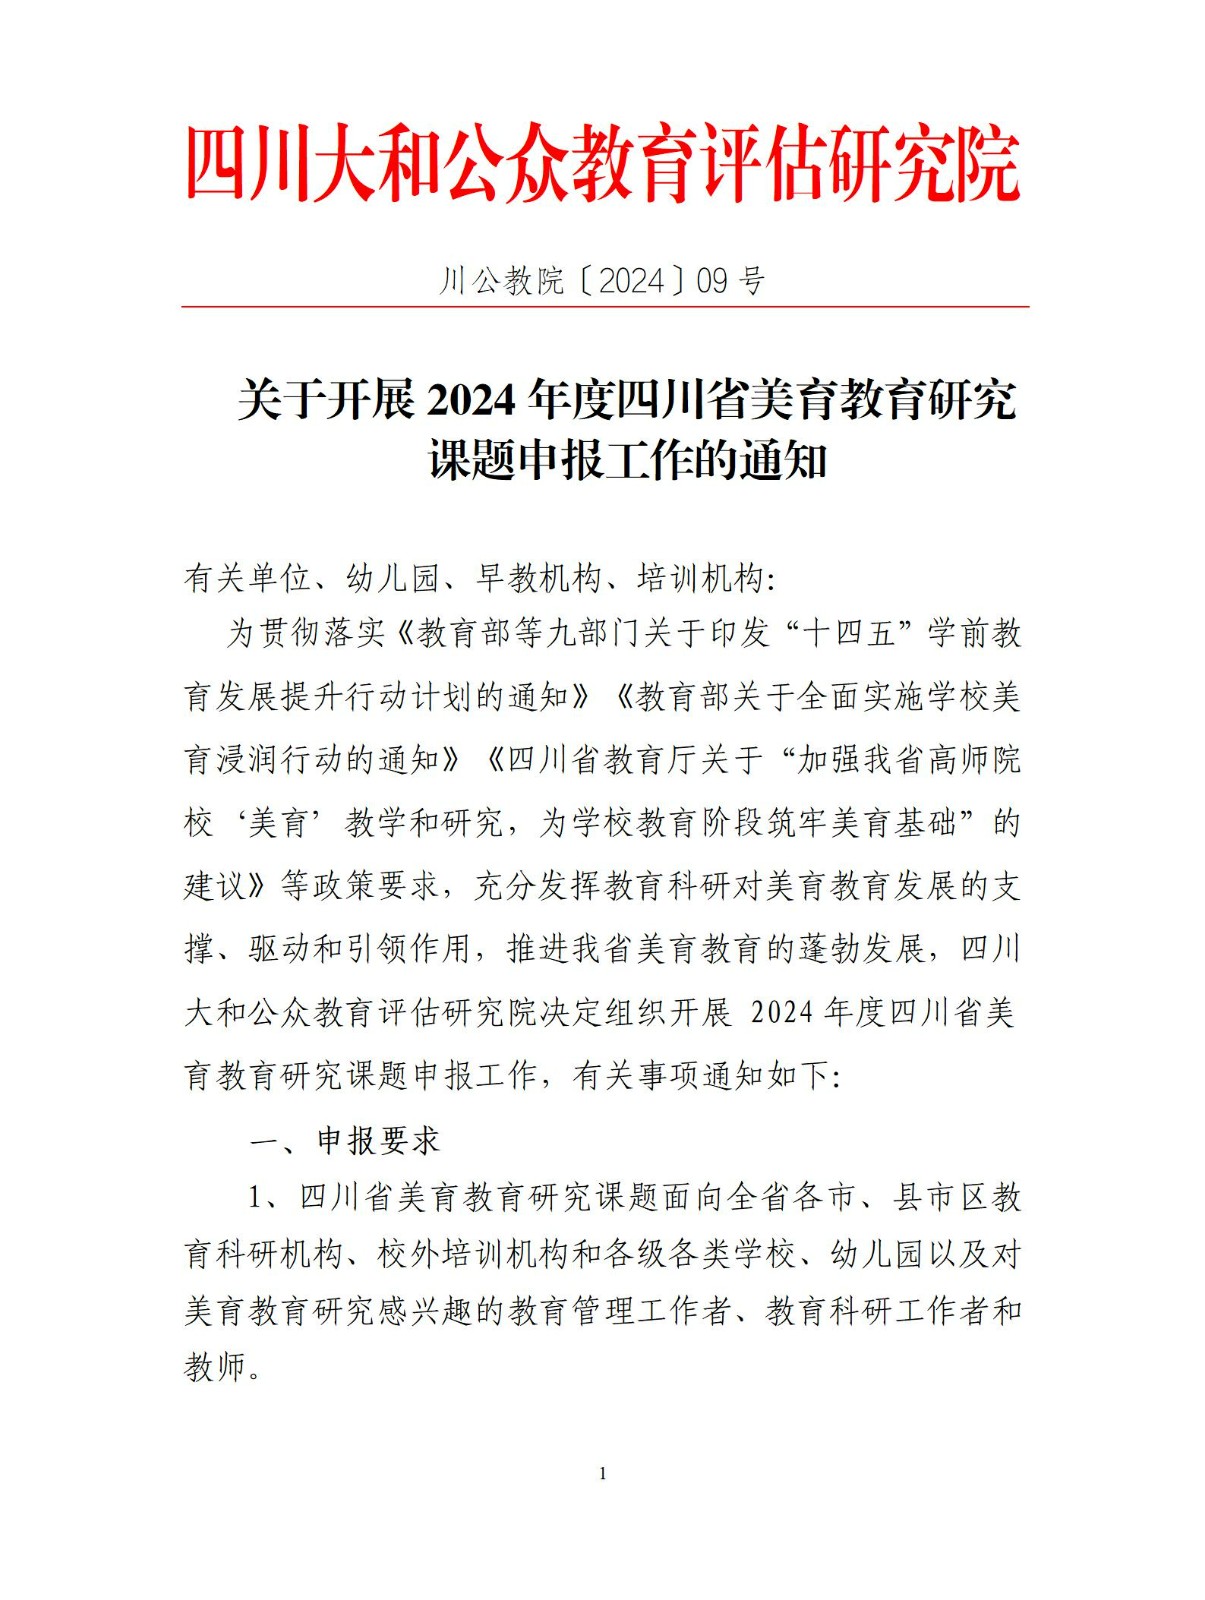 关于开展2024年度四川省美育教育研究 课题申报工作的通知